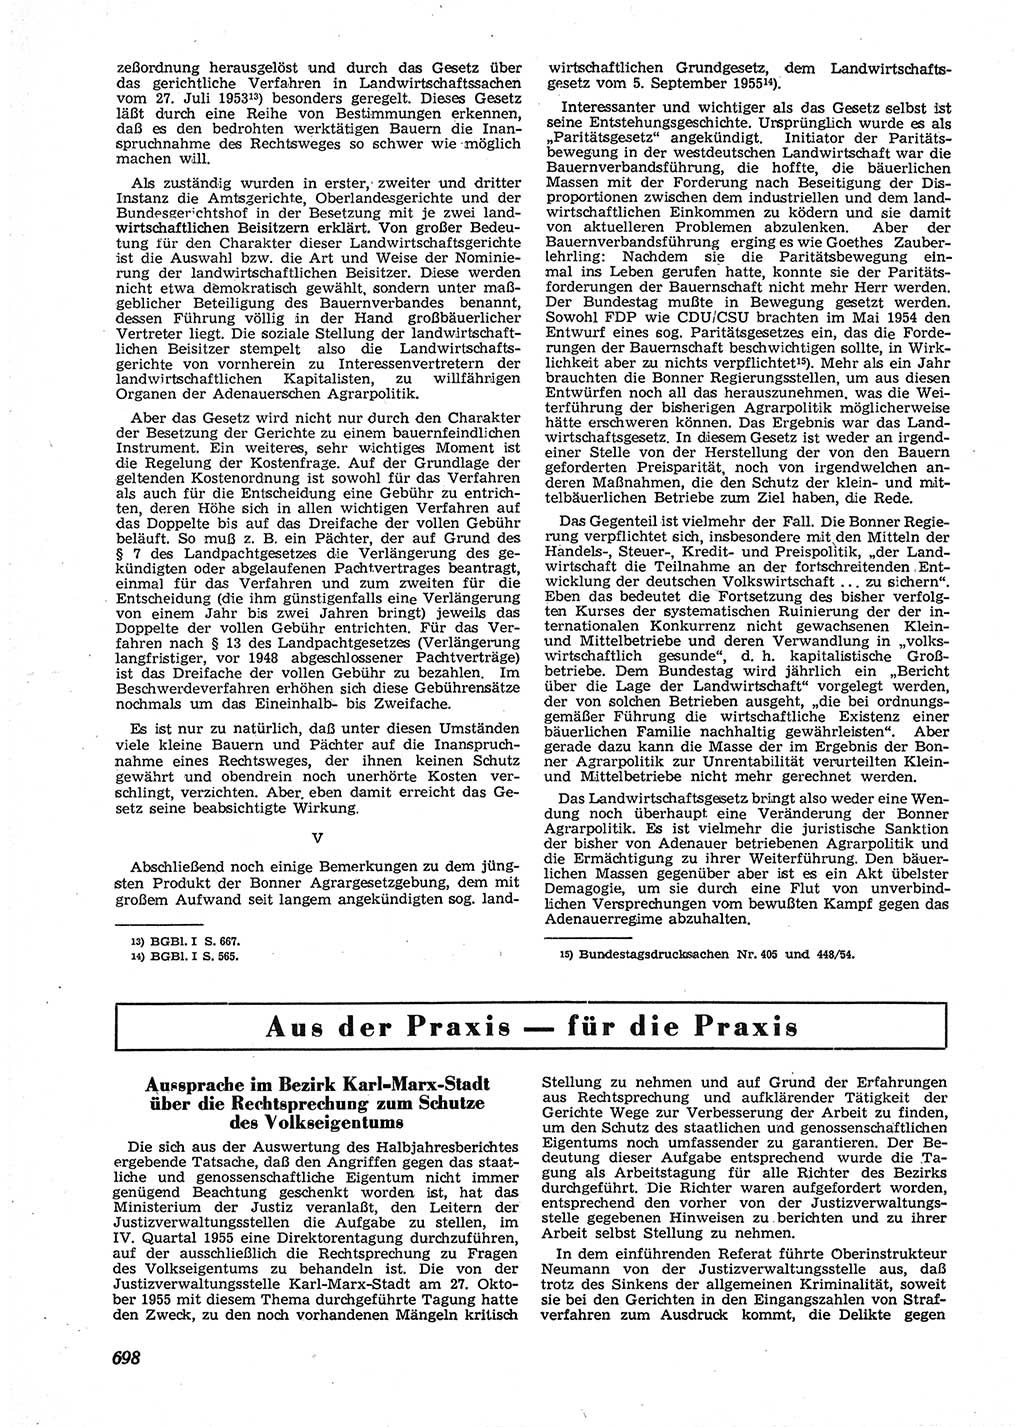 Neue Justiz (NJ), Zeitschrift für Recht und Rechtswissenschaft [Deutsche Demokratische Republik (DDR)], 9. Jahrgang 1955, Seite 698 (NJ DDR 1955, S. 698)